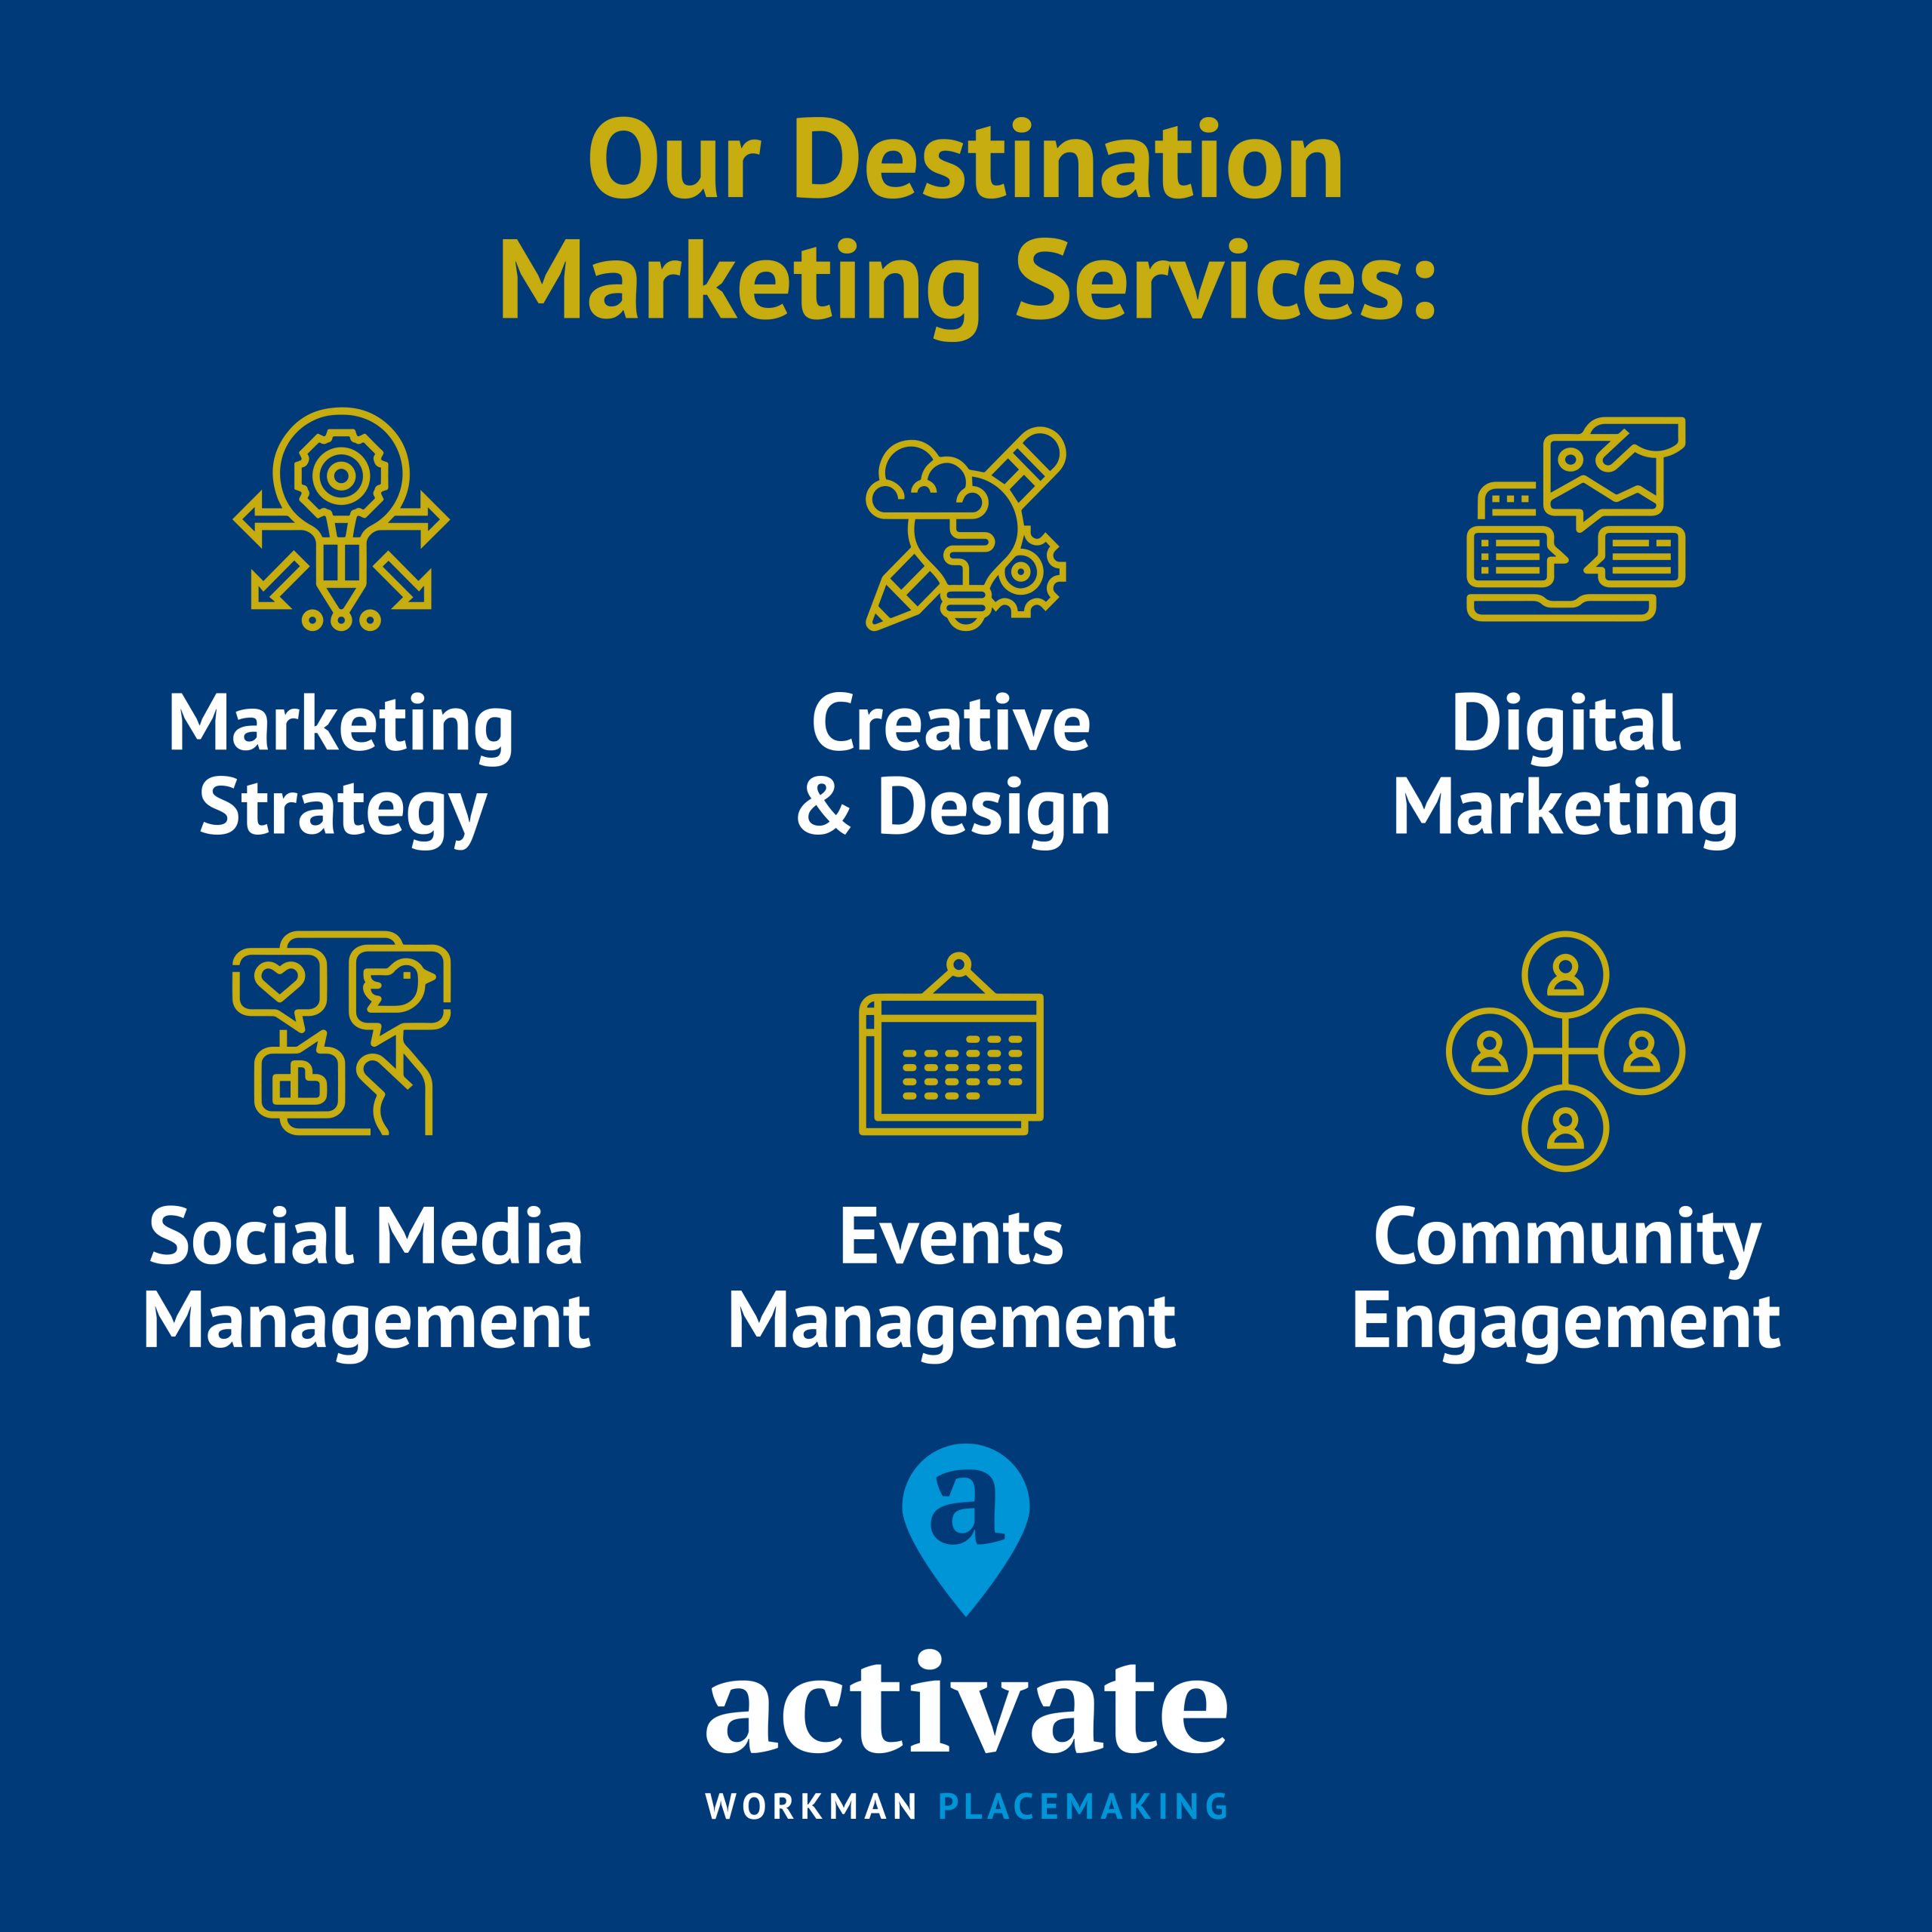 Our destination marketing services